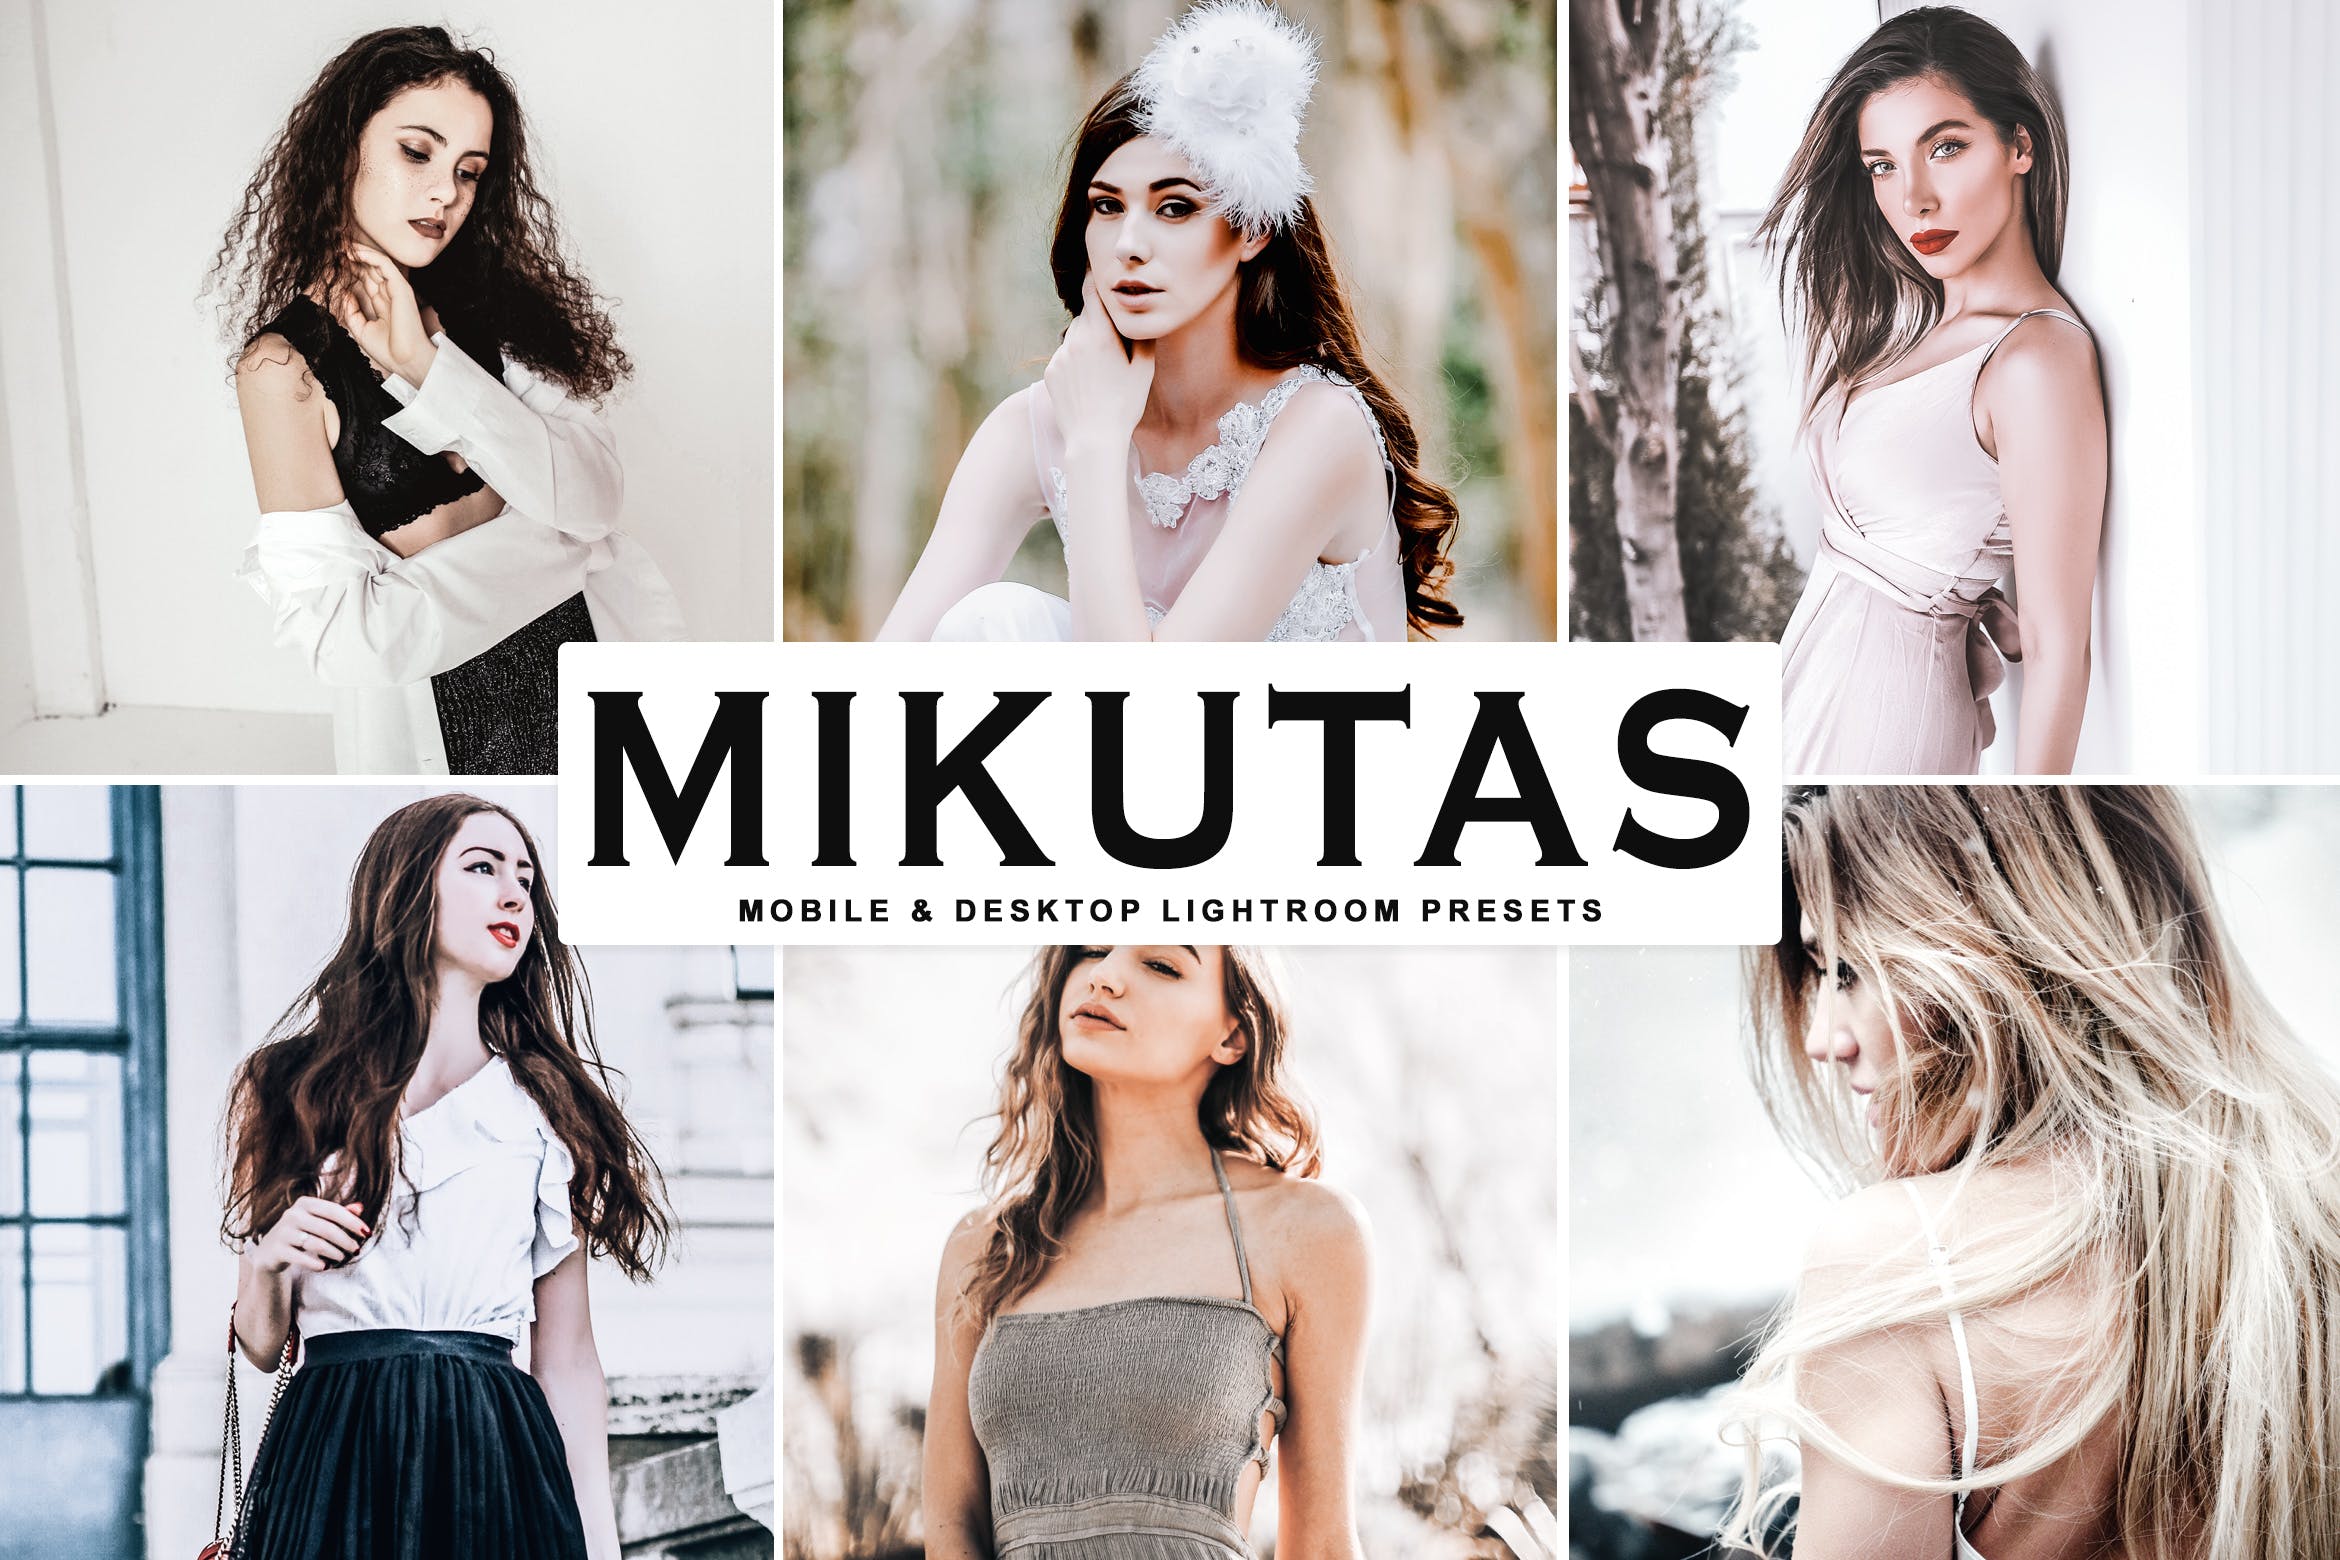 大师级人像摄影后期调色LR预设下载 Mikutas Mobile & Desktop Lightroom Presets插图